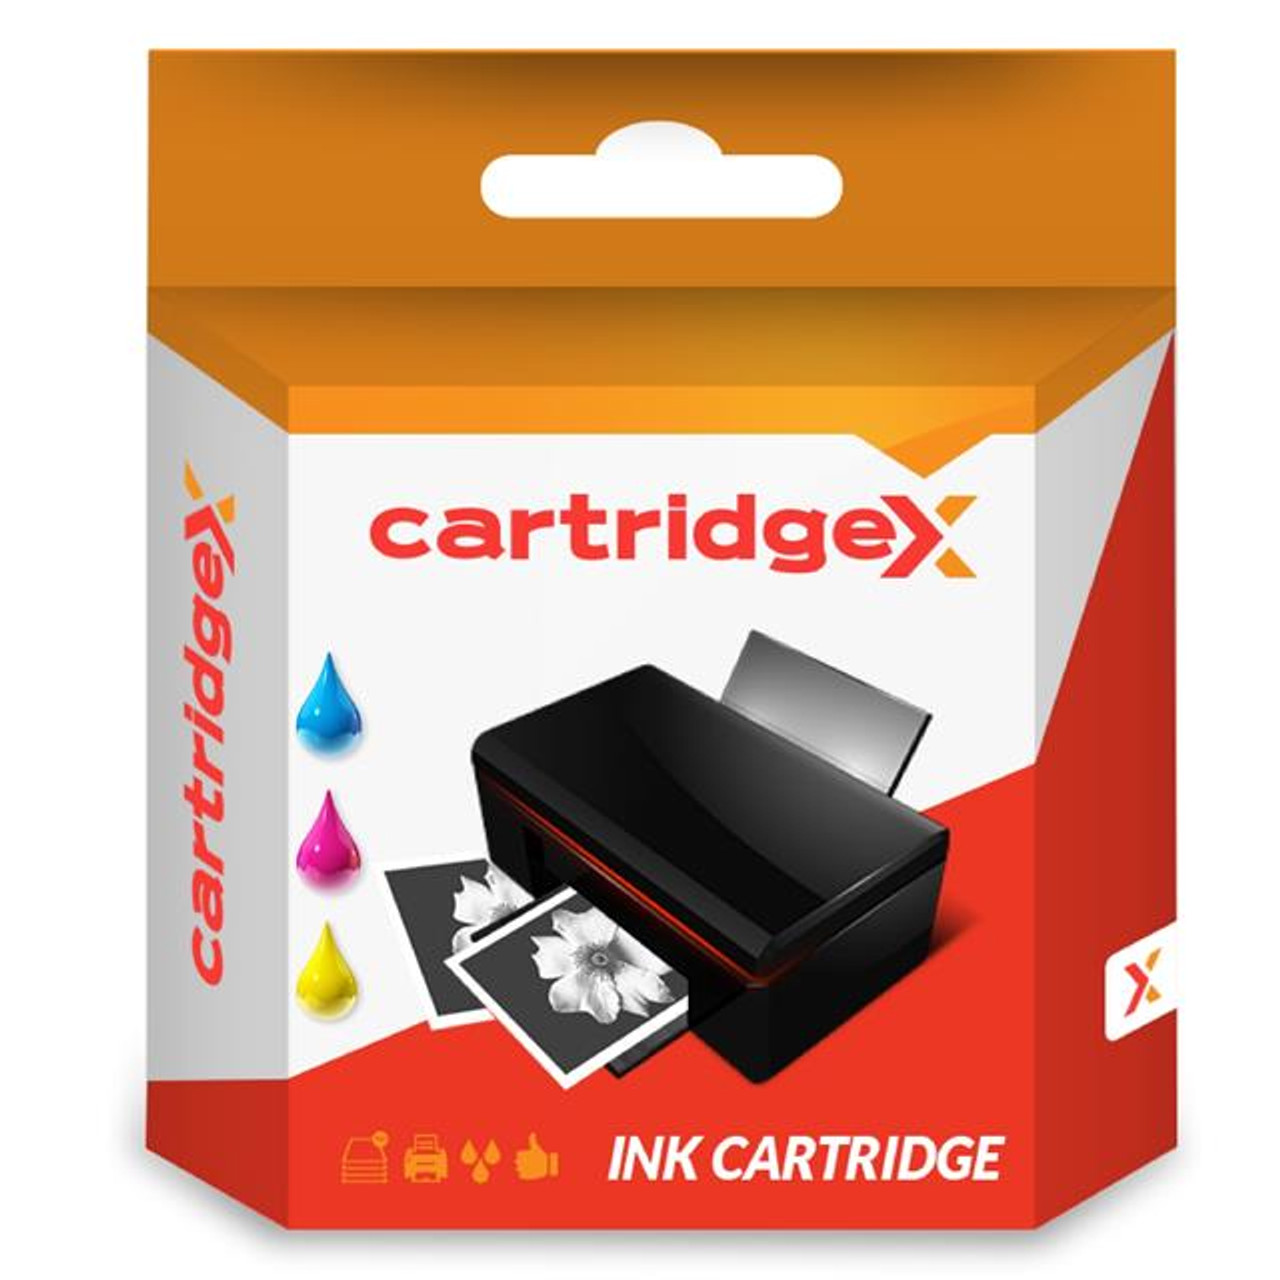 Compatible Tri-colour Ink Cartridge For Hp 22 Deskjet 3930 3938 3940 3940v D1360 D1400